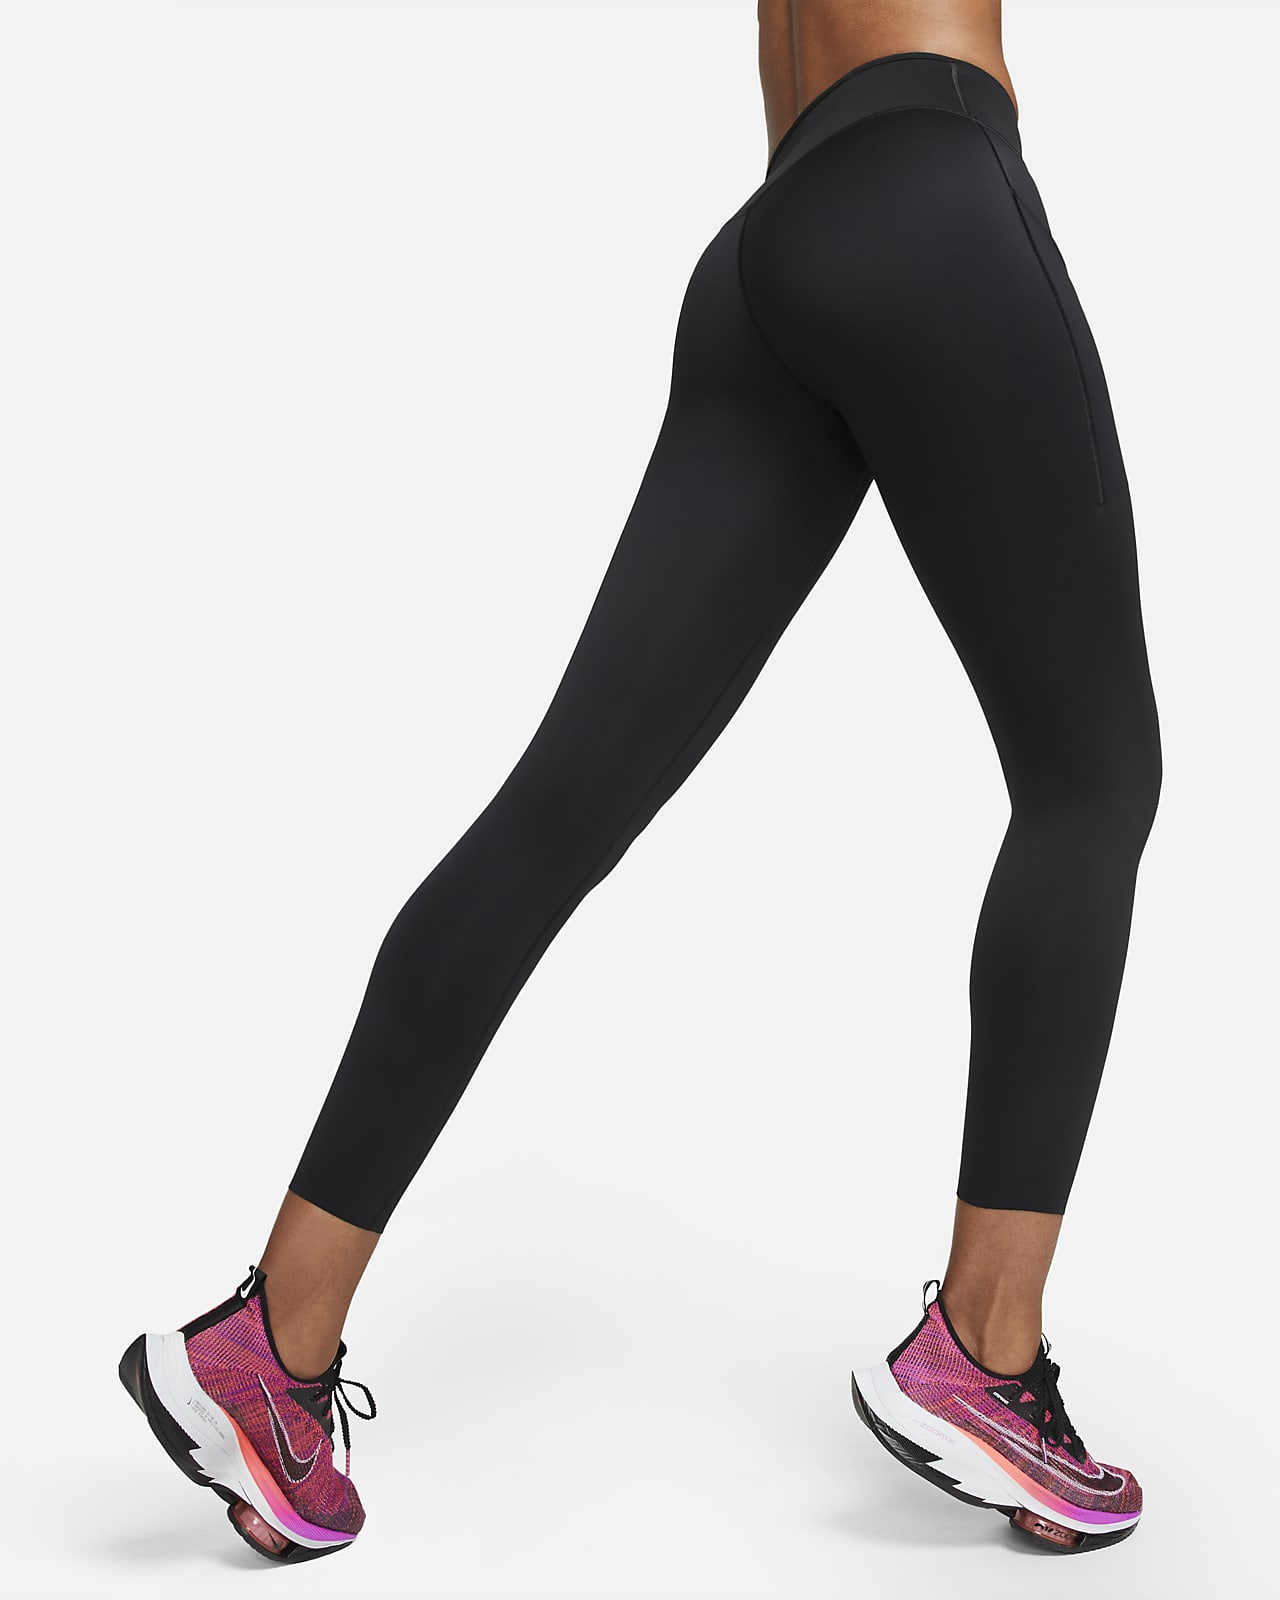 Los leggings Nike con mejor sujeción y compresión. Nike ES